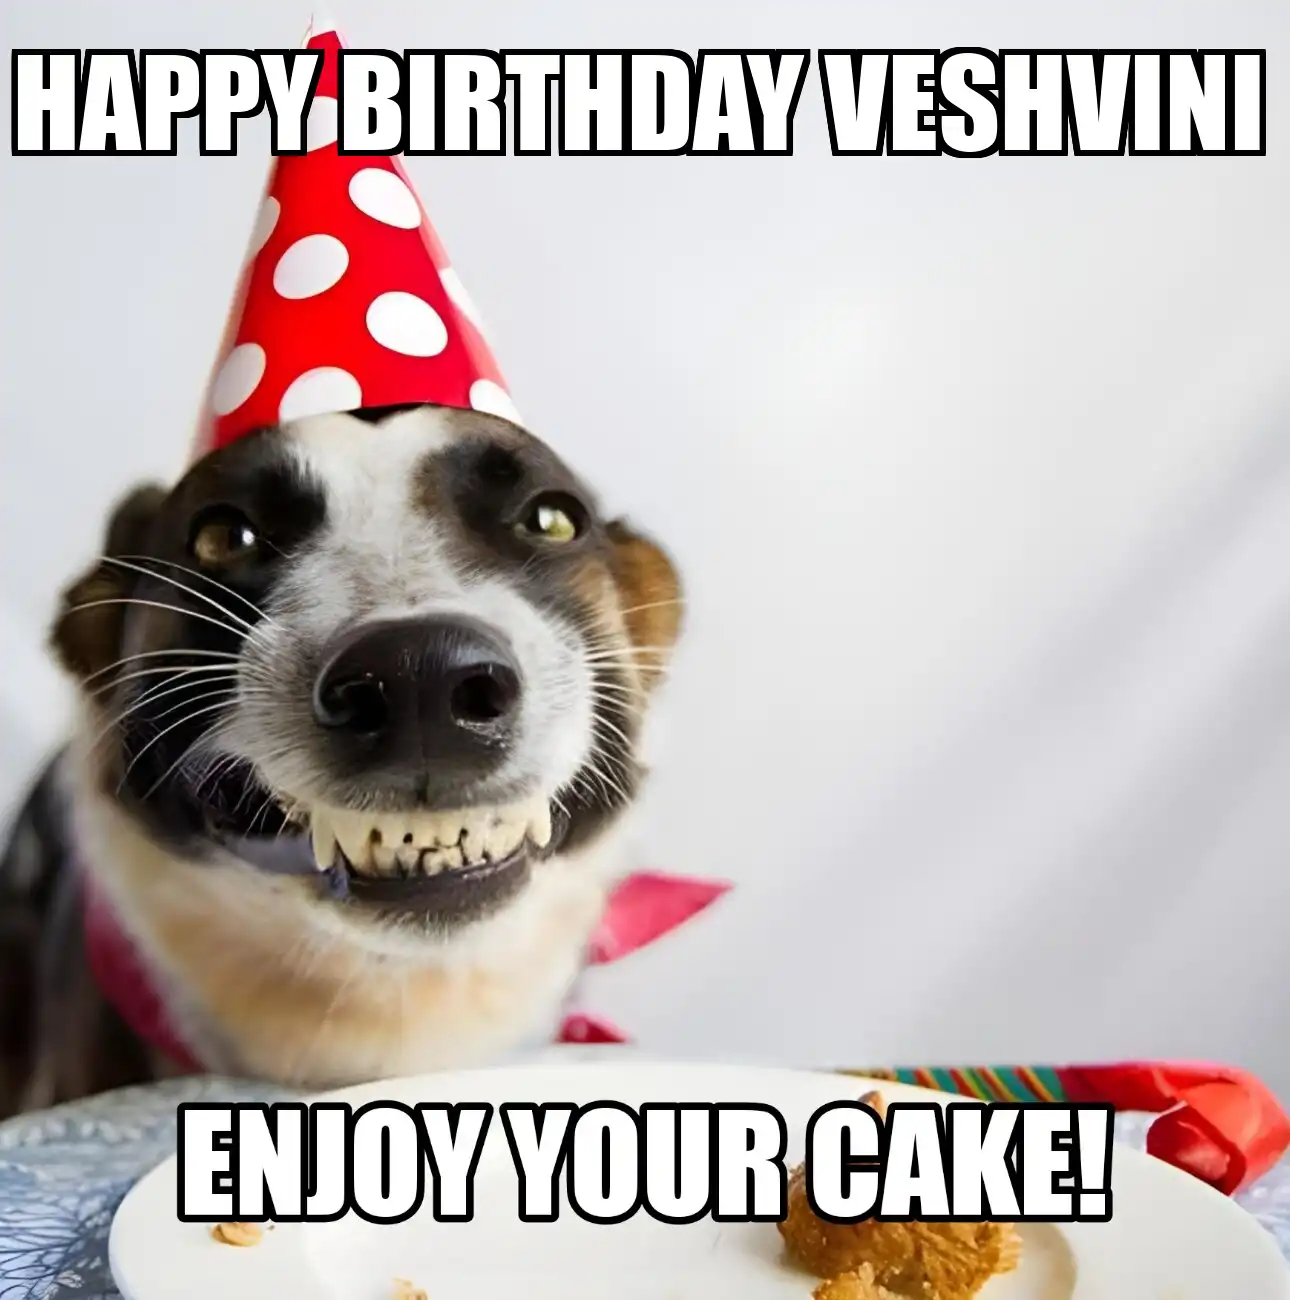 Happy Birthday Veshvini Enjoy Your Cake Dog Meme